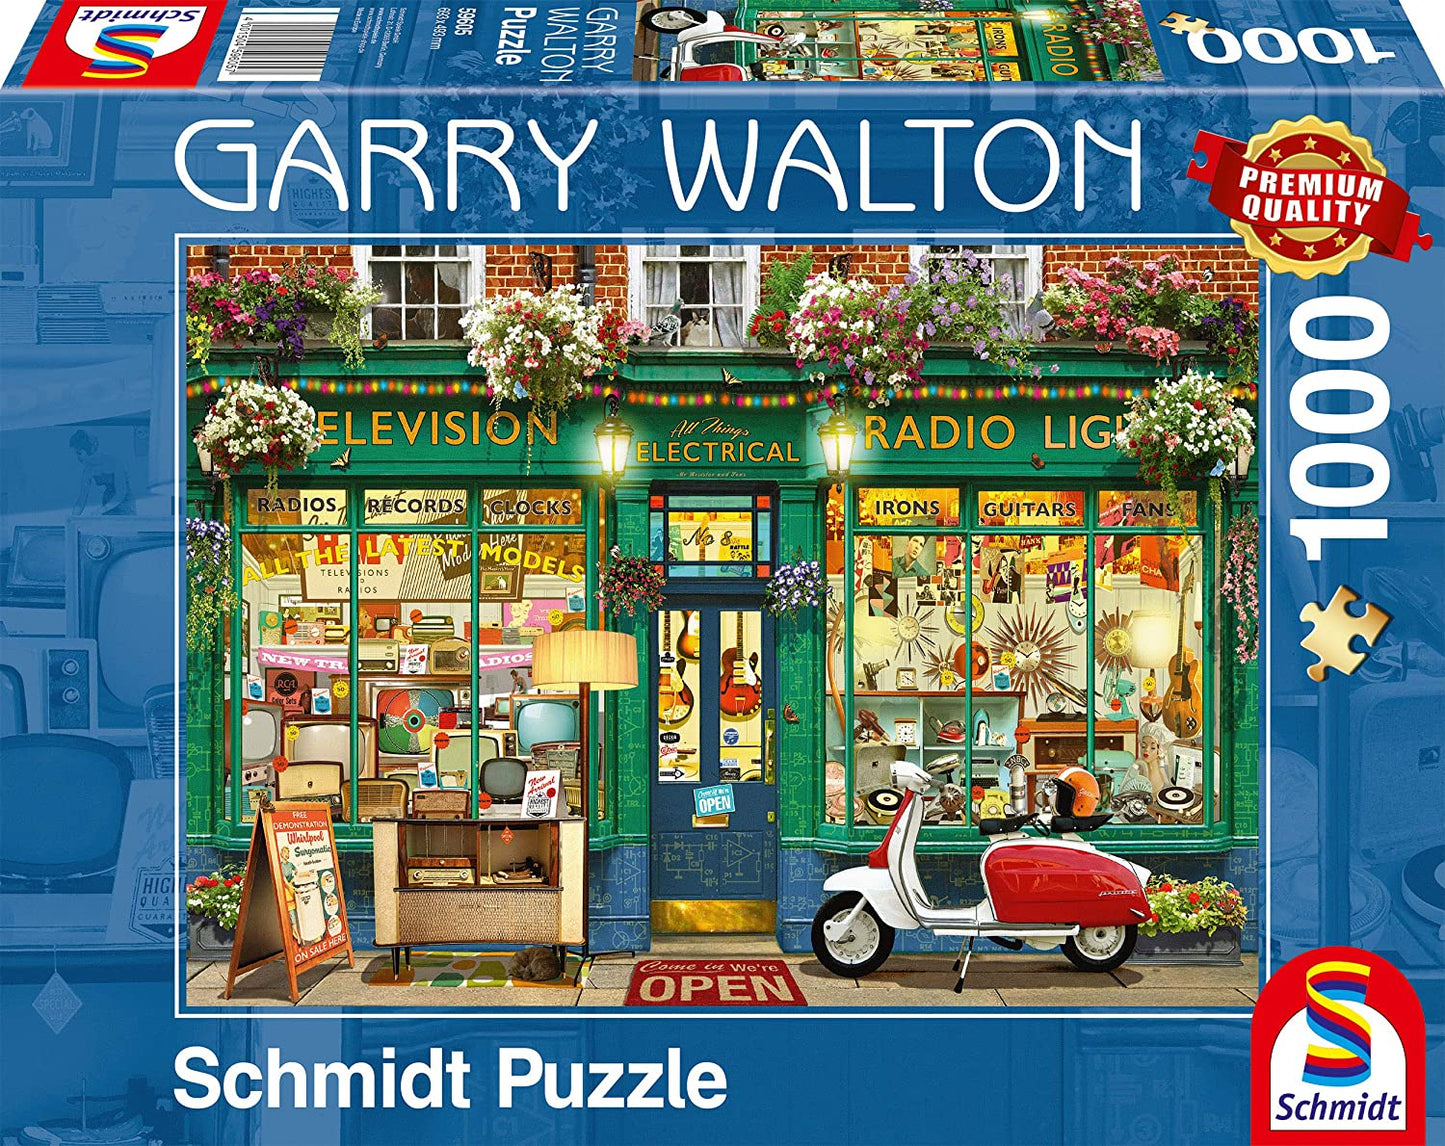 Schmidt - Garry Walton: Electronics Shop - 1000 Piece Jigsaw Puzzle